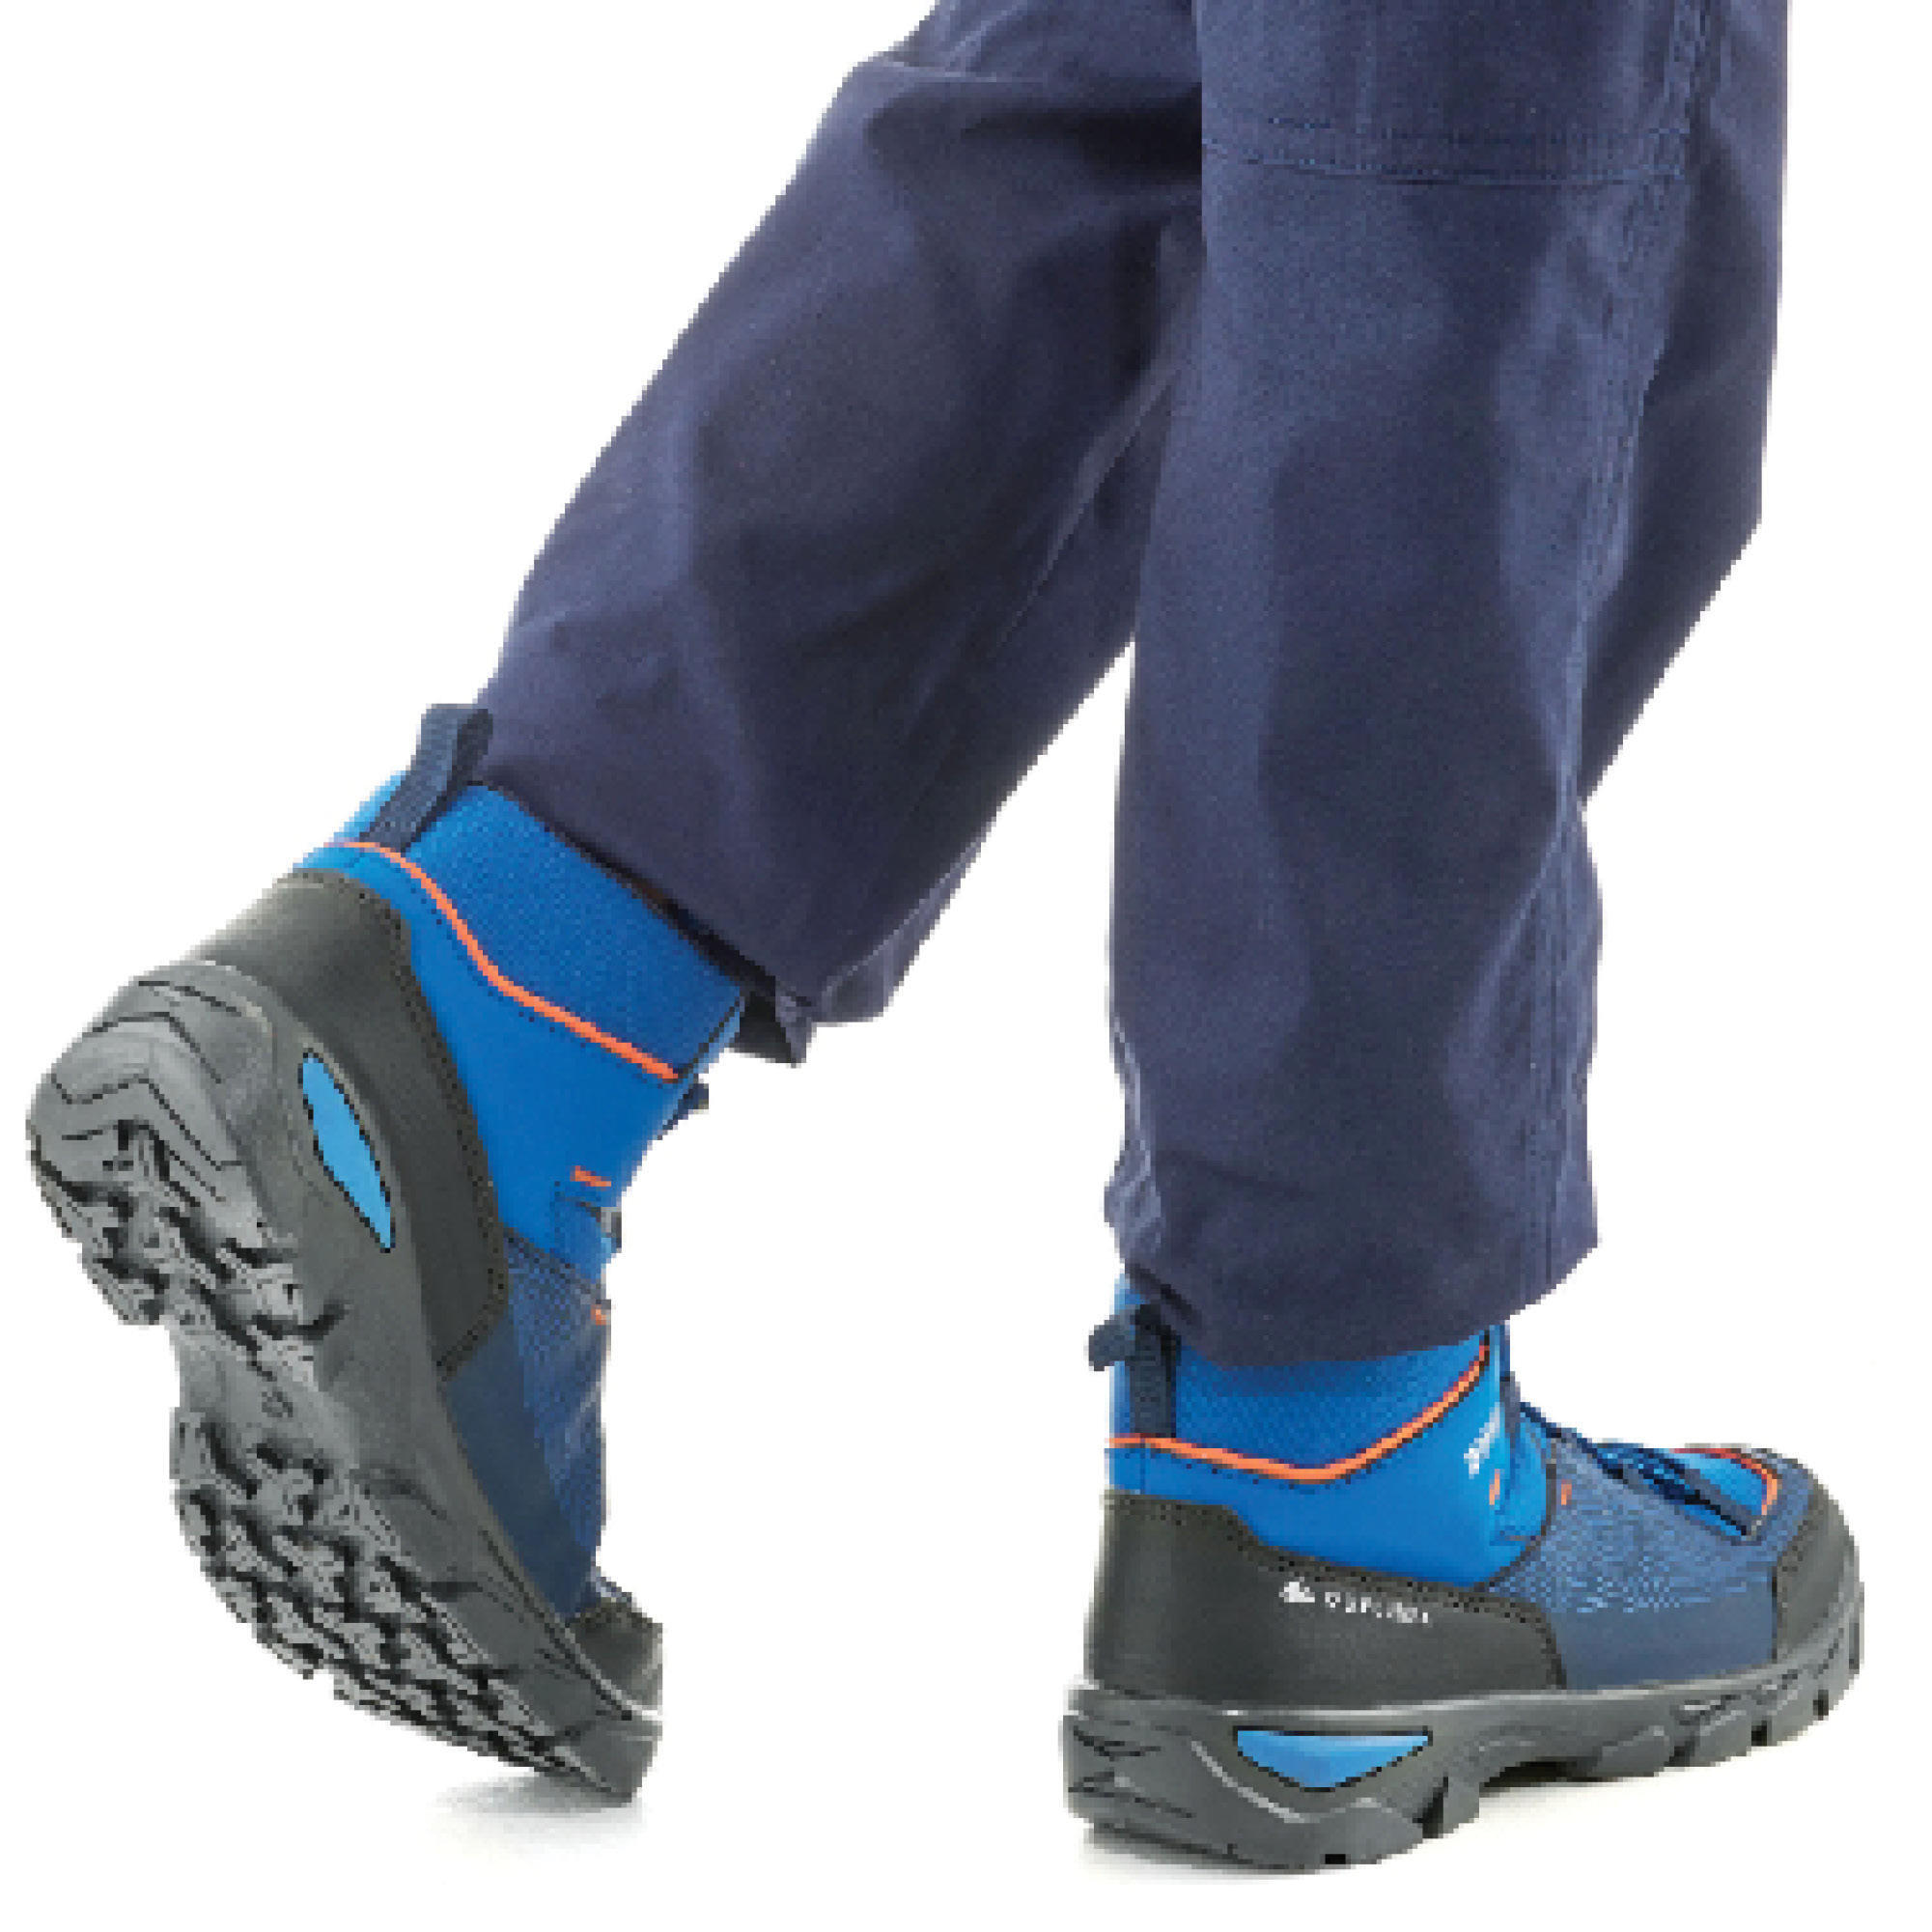 Chidren's waterproof walking shoes - MH120 MID blue - size 3-5 7/8